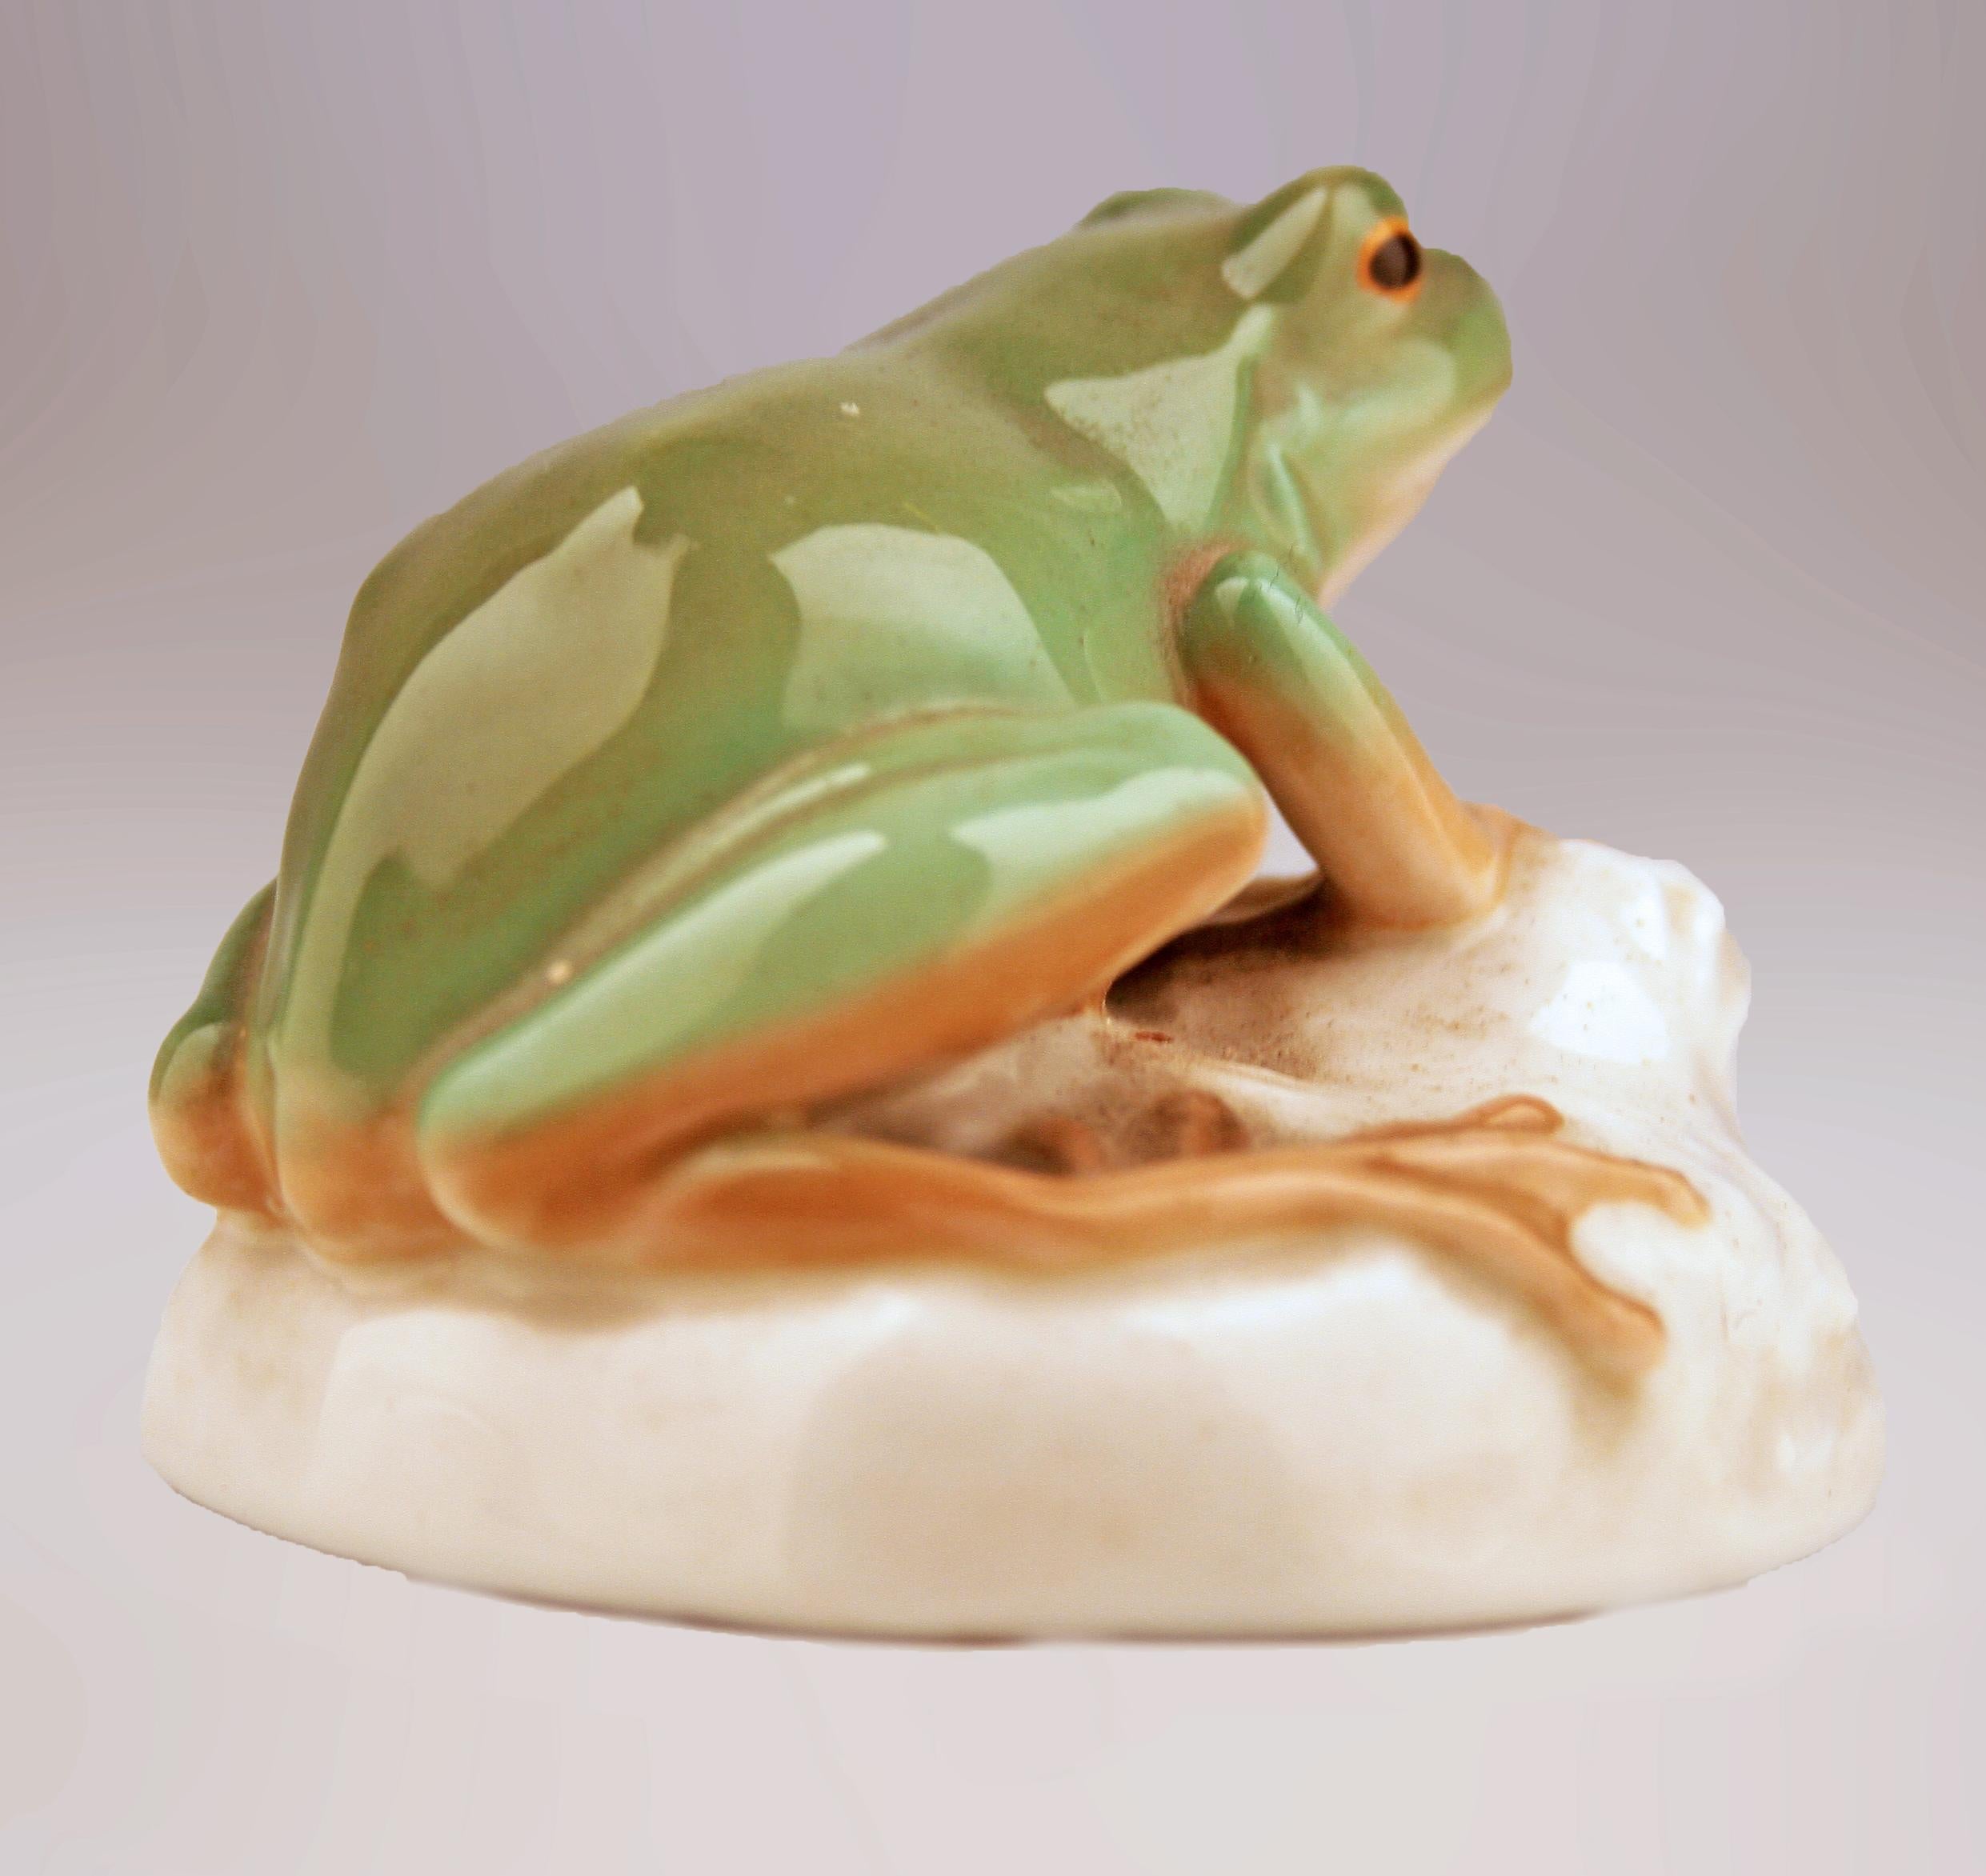 Jugendstil Mid-20th Century Modern German Glazed and Painted Porcelain Frog by Nymphenburg For Sale